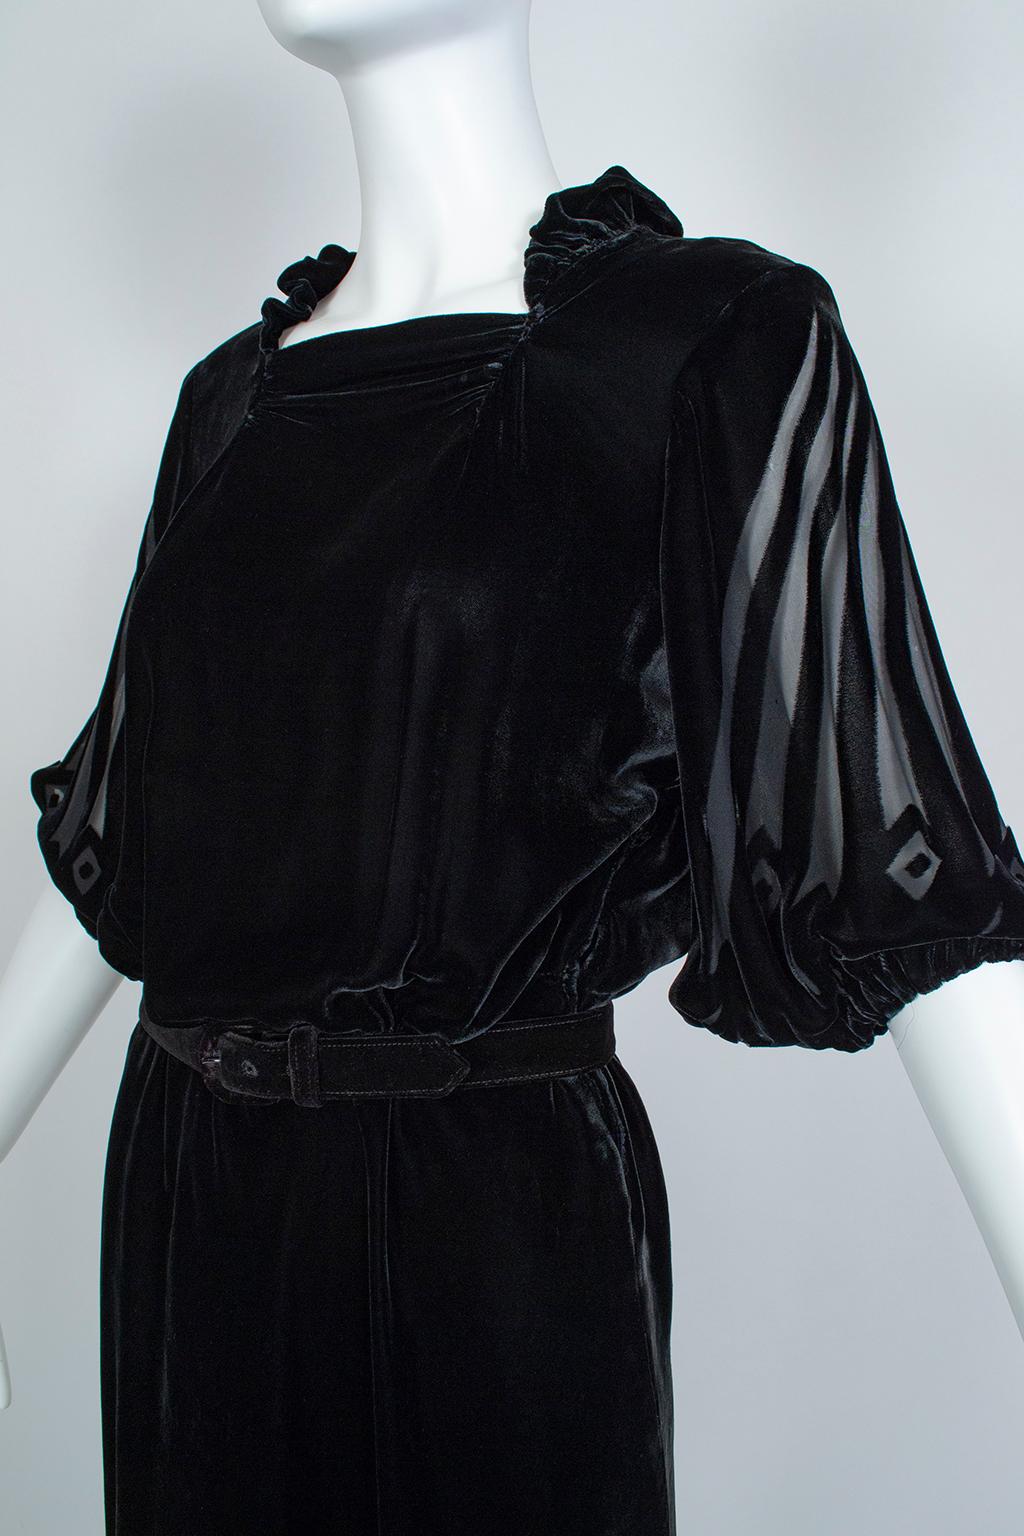 Women's Black Art Deco Starburst Burnout Velvet Cocktail Dress - Medium, 1930s